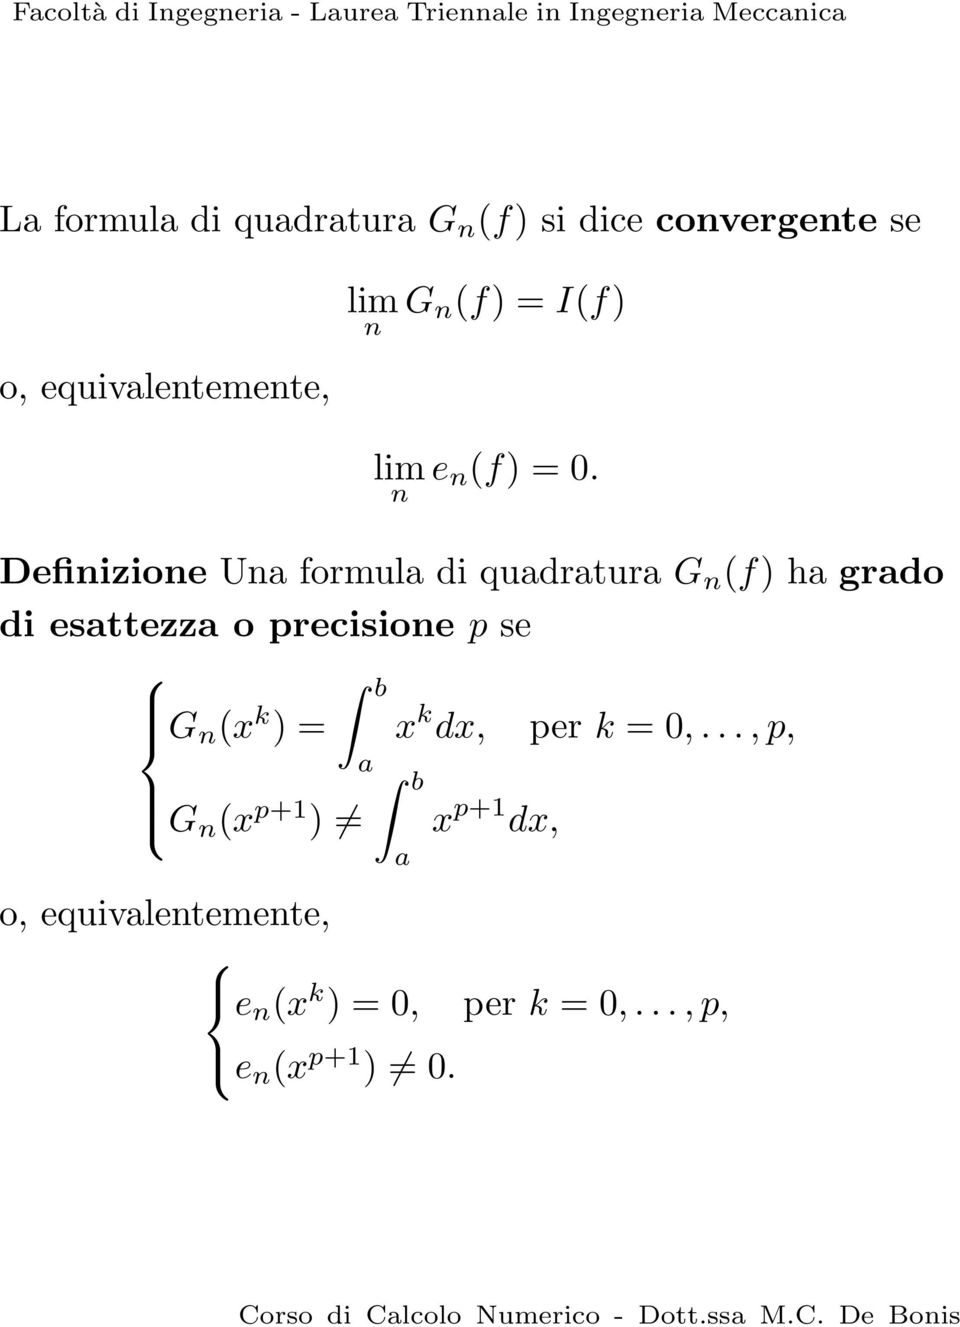 Defiizioe U formul di qudrtur G (f) h grdo di esttezz o precisioe p se G (x k ) = x k dx, per k